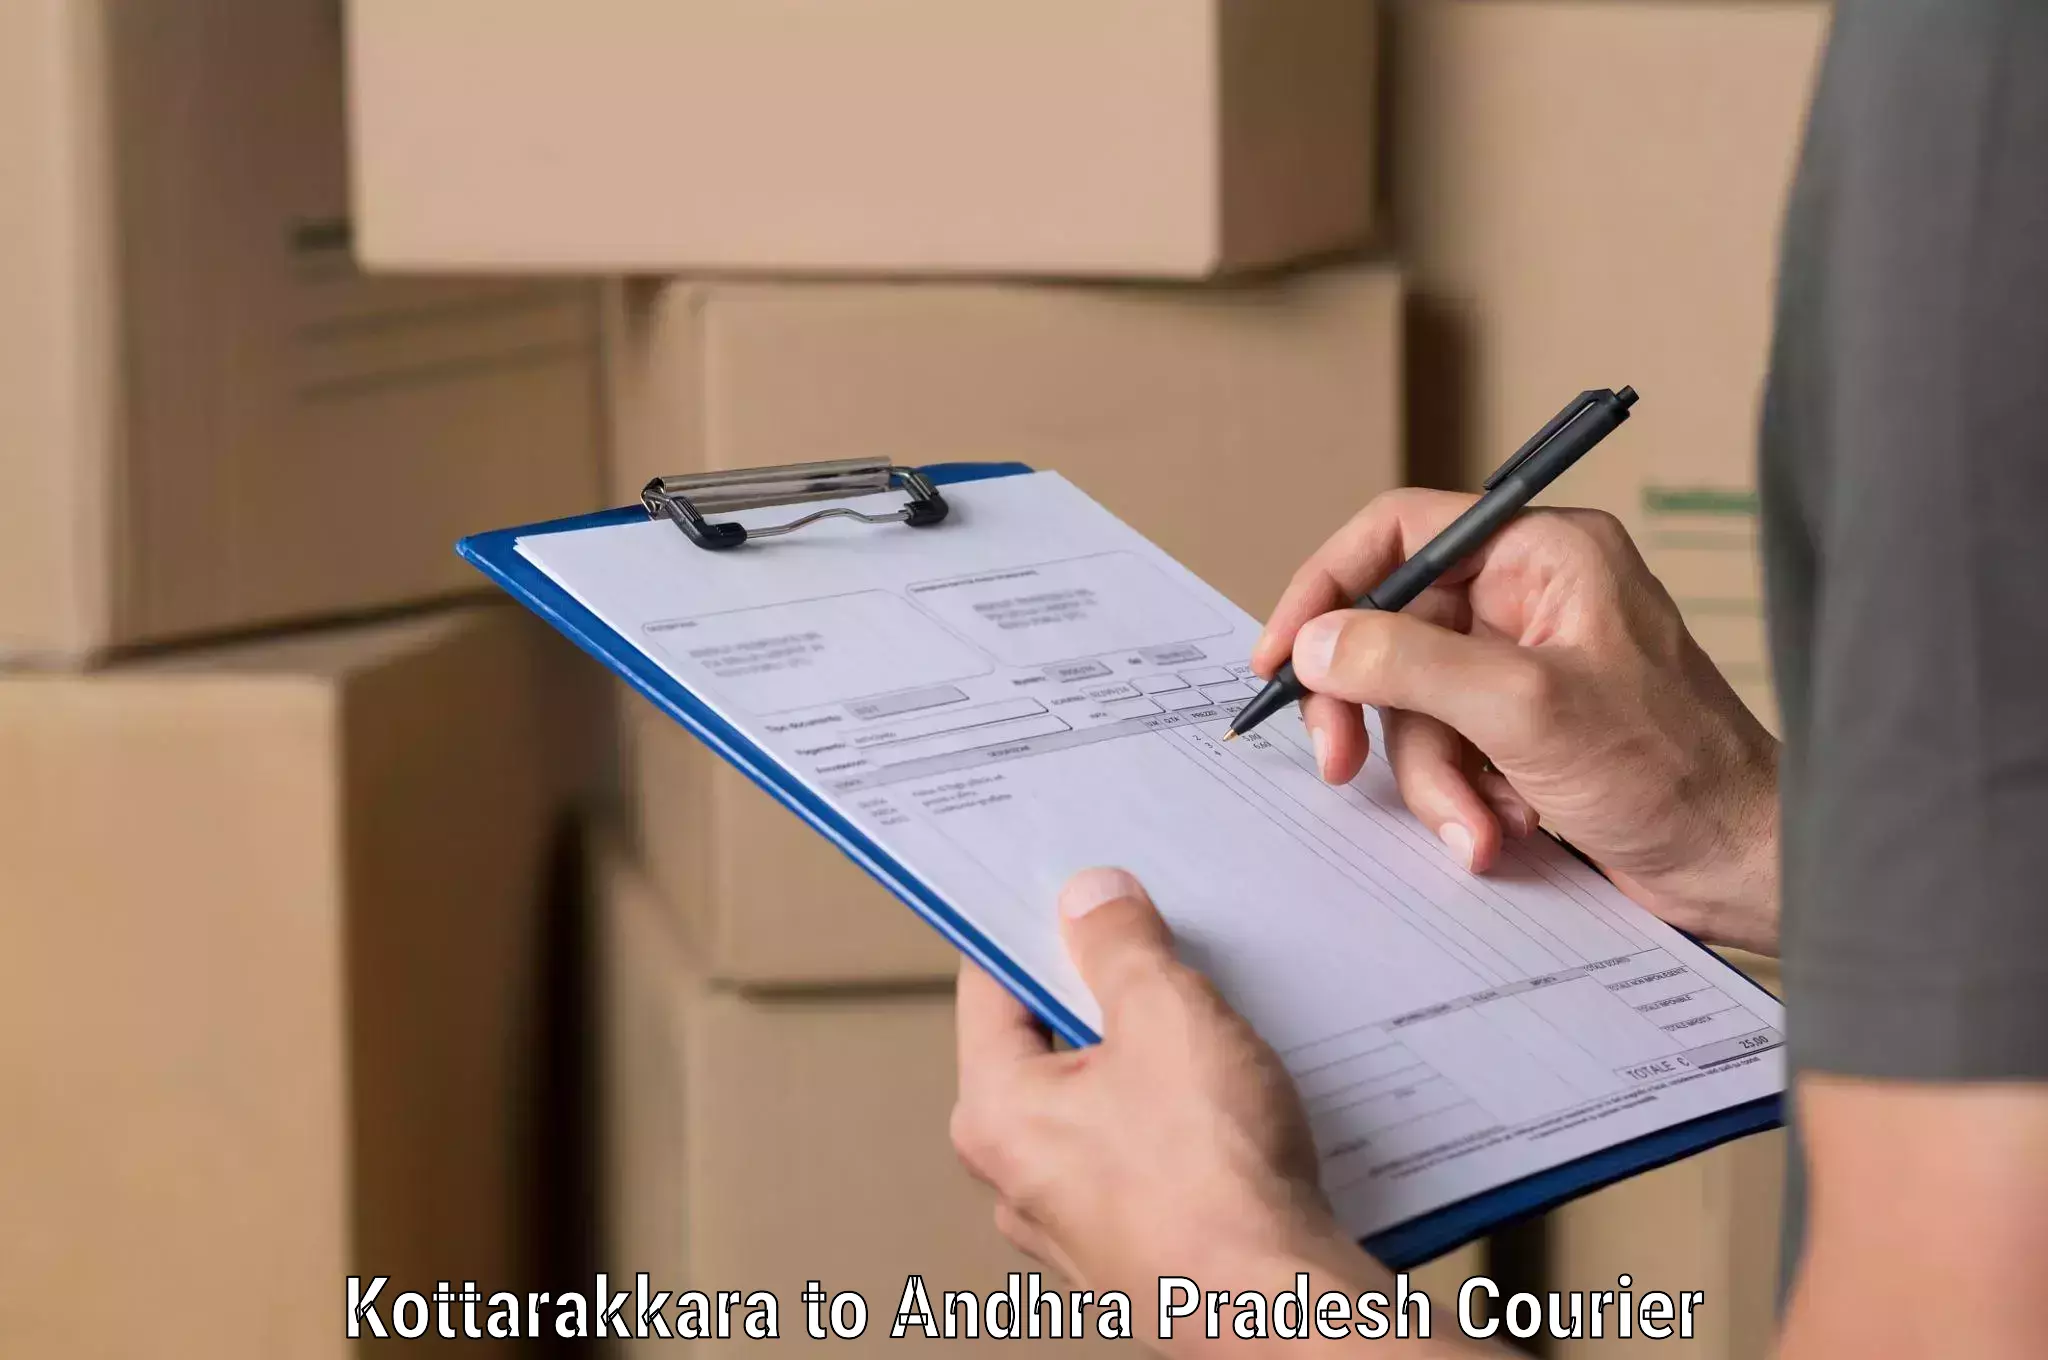 Modern courier technology Kottarakkara to Guntur